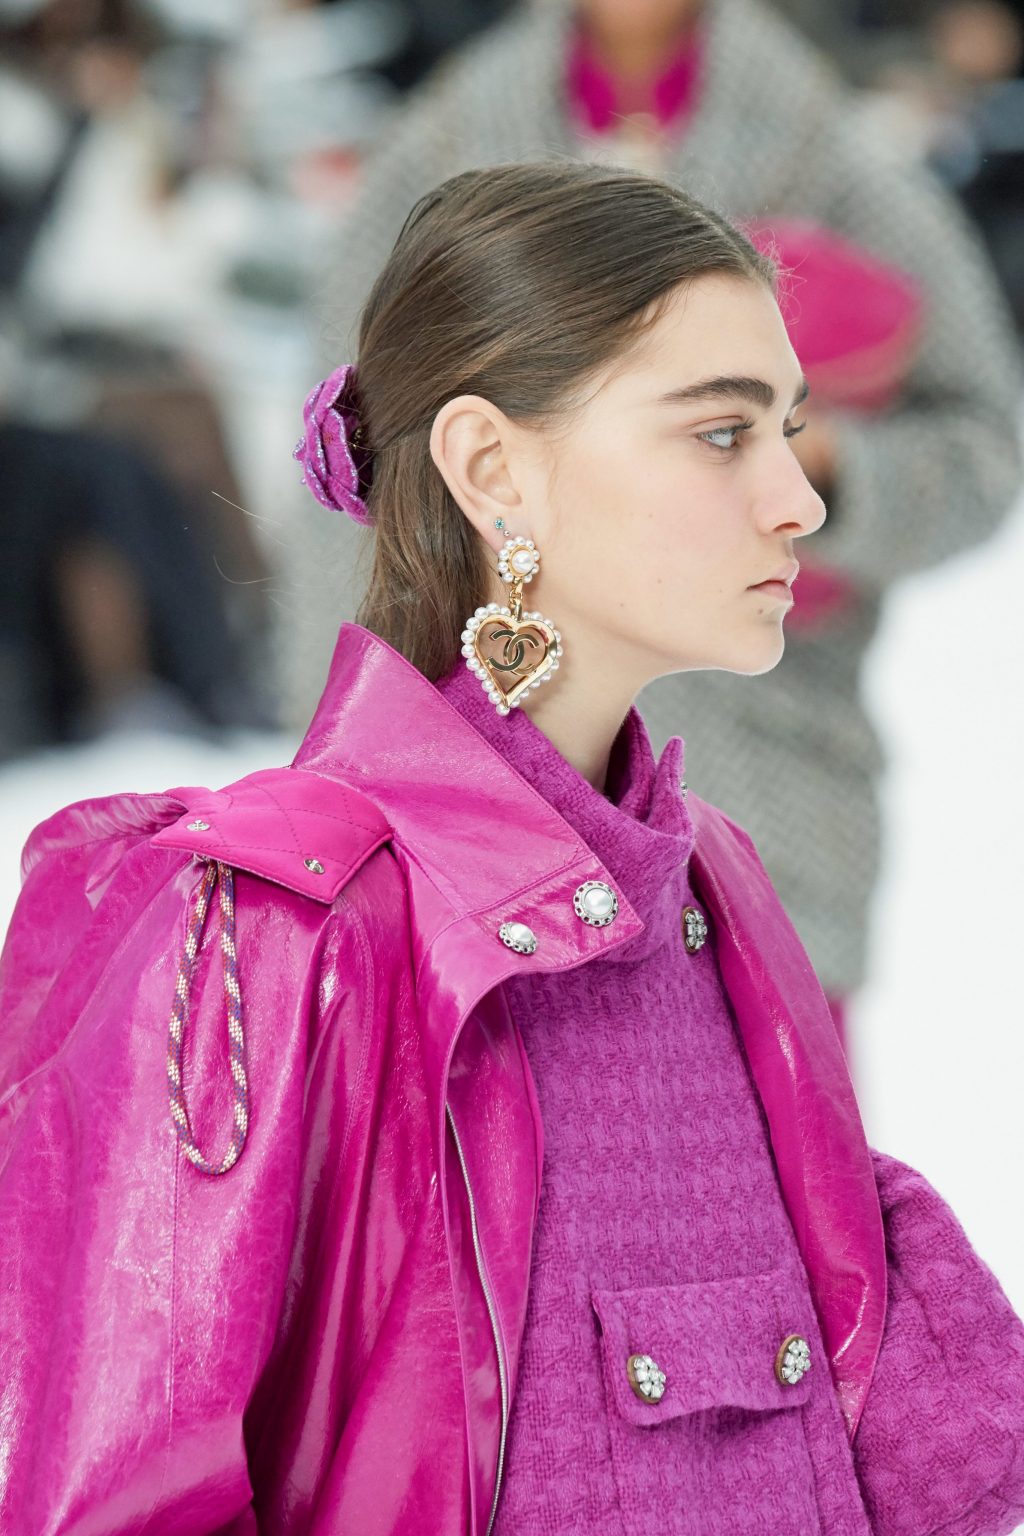 hoa tai ngọc trai từ nhà mốt Chanel - phụ kiện ngọc trai trên sàn runway 2019